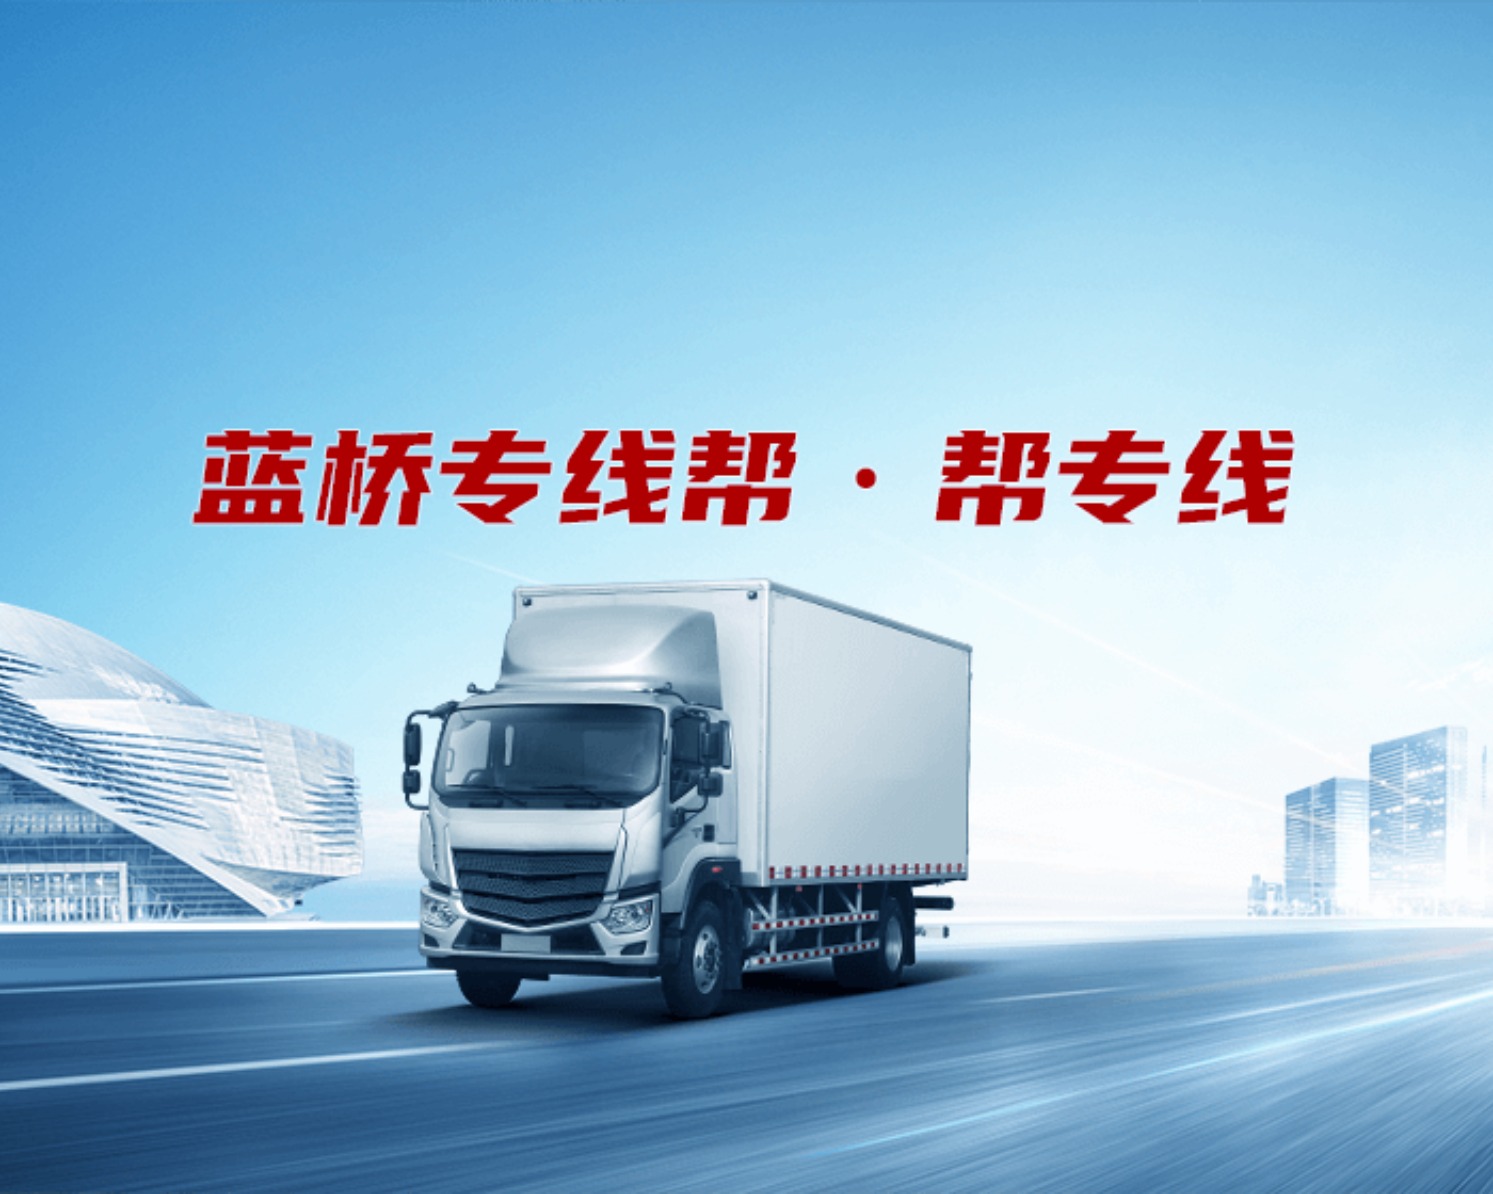 天津鸿勤达货运有限公司的专线公司的形象展示LOGO